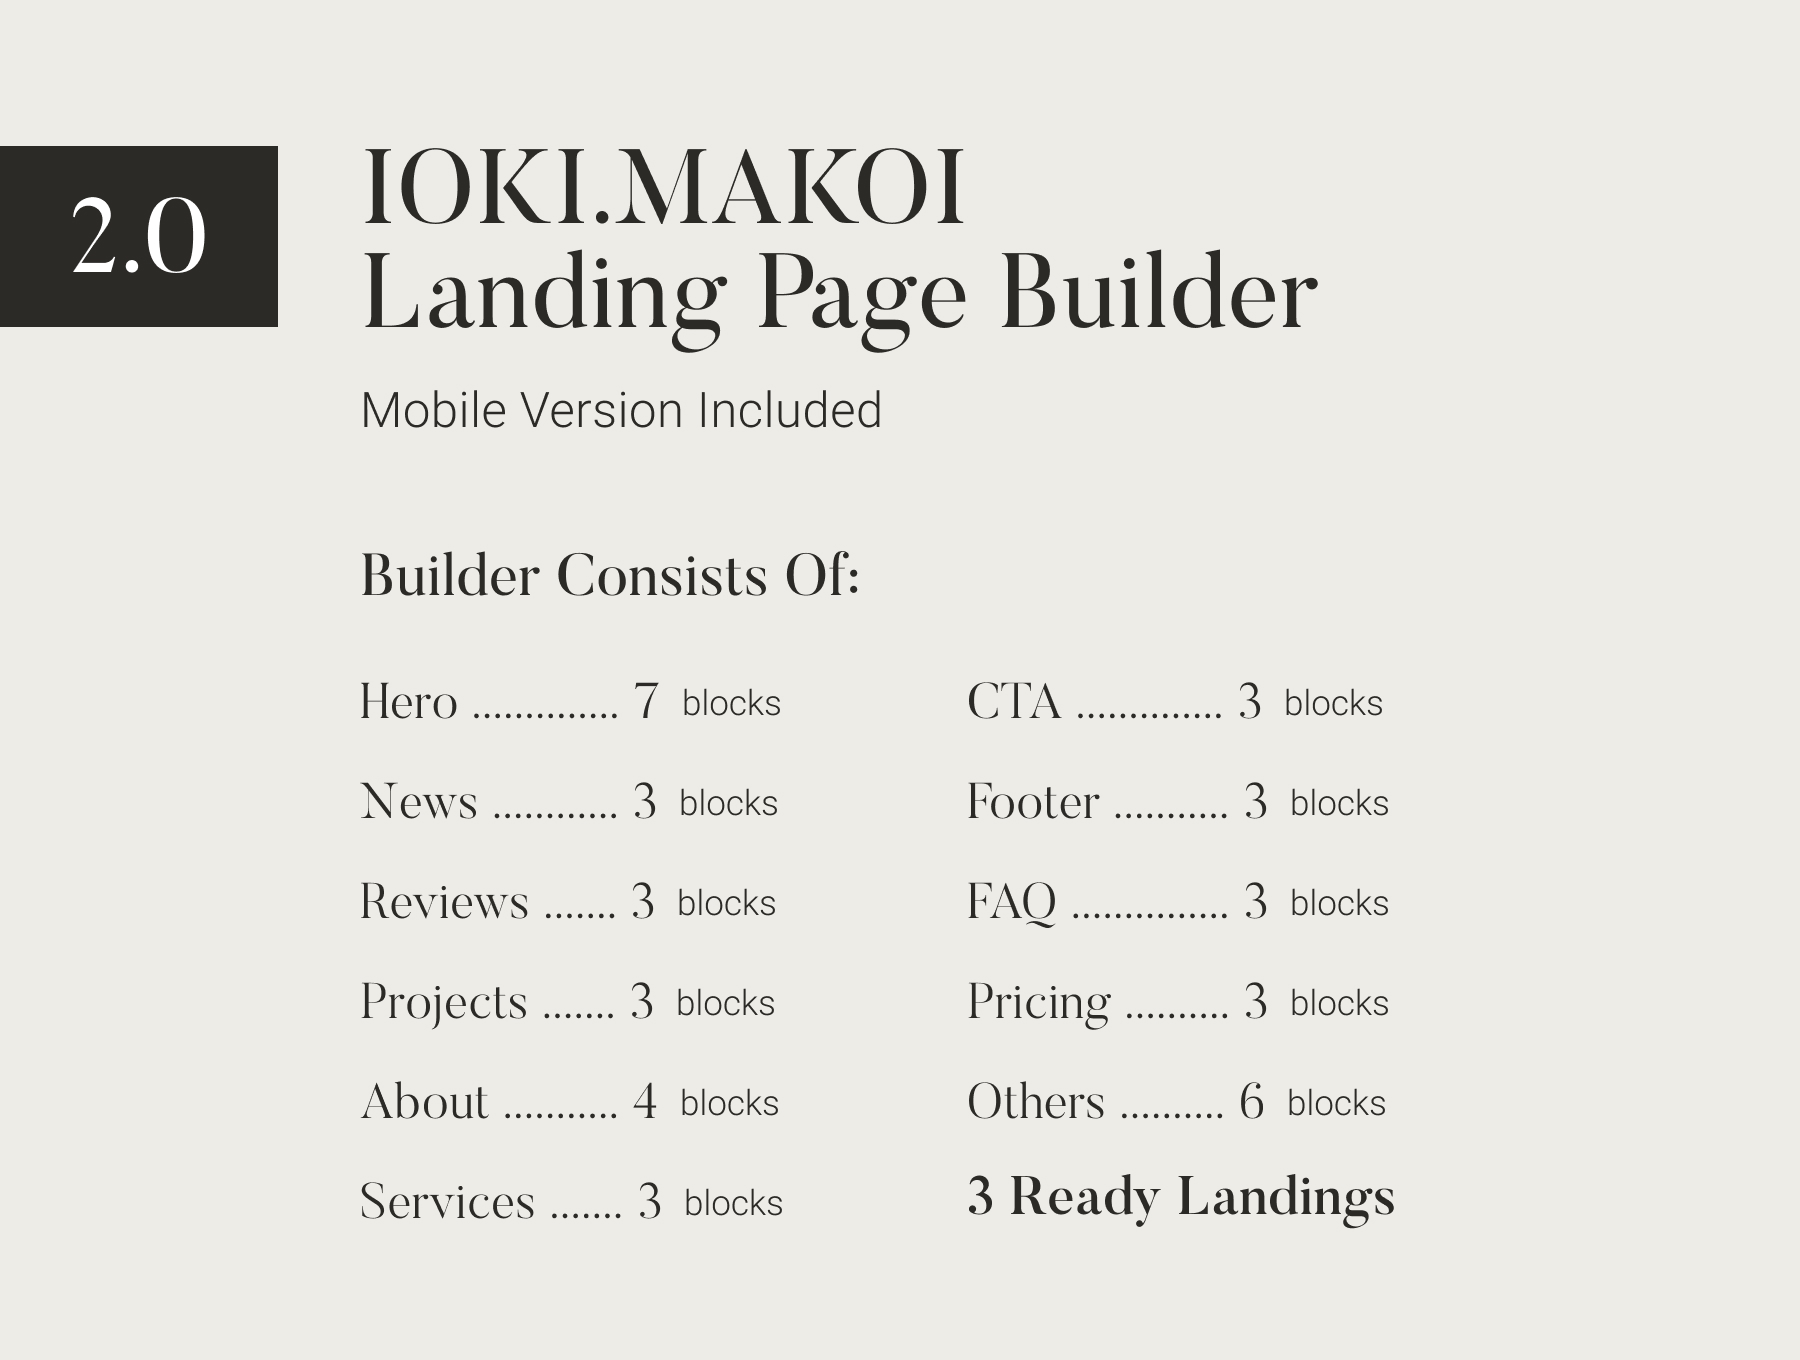 欧美杂志风网站落地页快速搭建设计模板素材 IOKI.MAKO